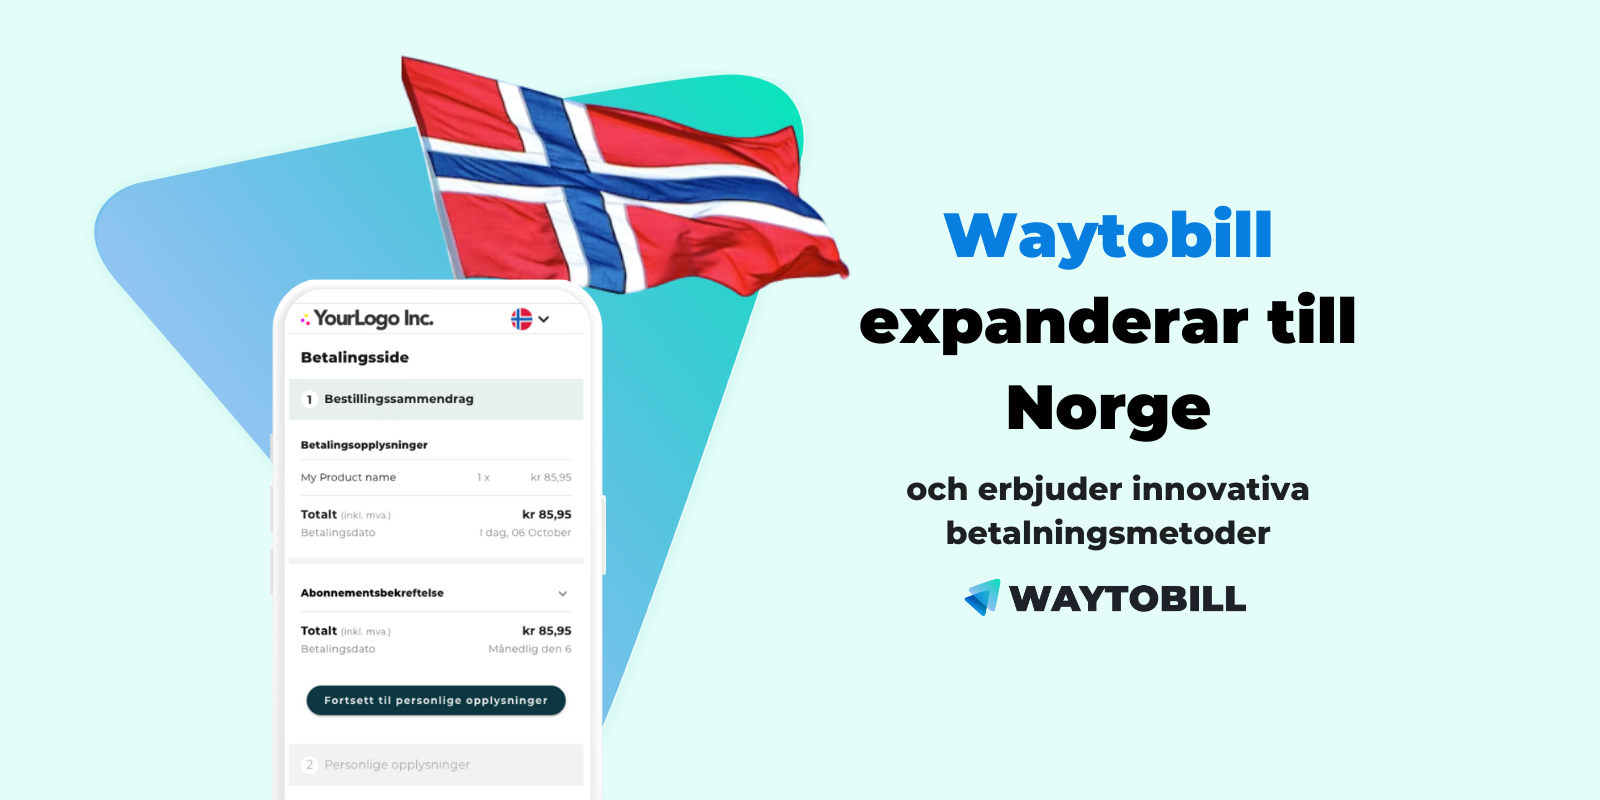 Waytobill expanderar till Norge och erbjuder innovativa betalningsmetoder